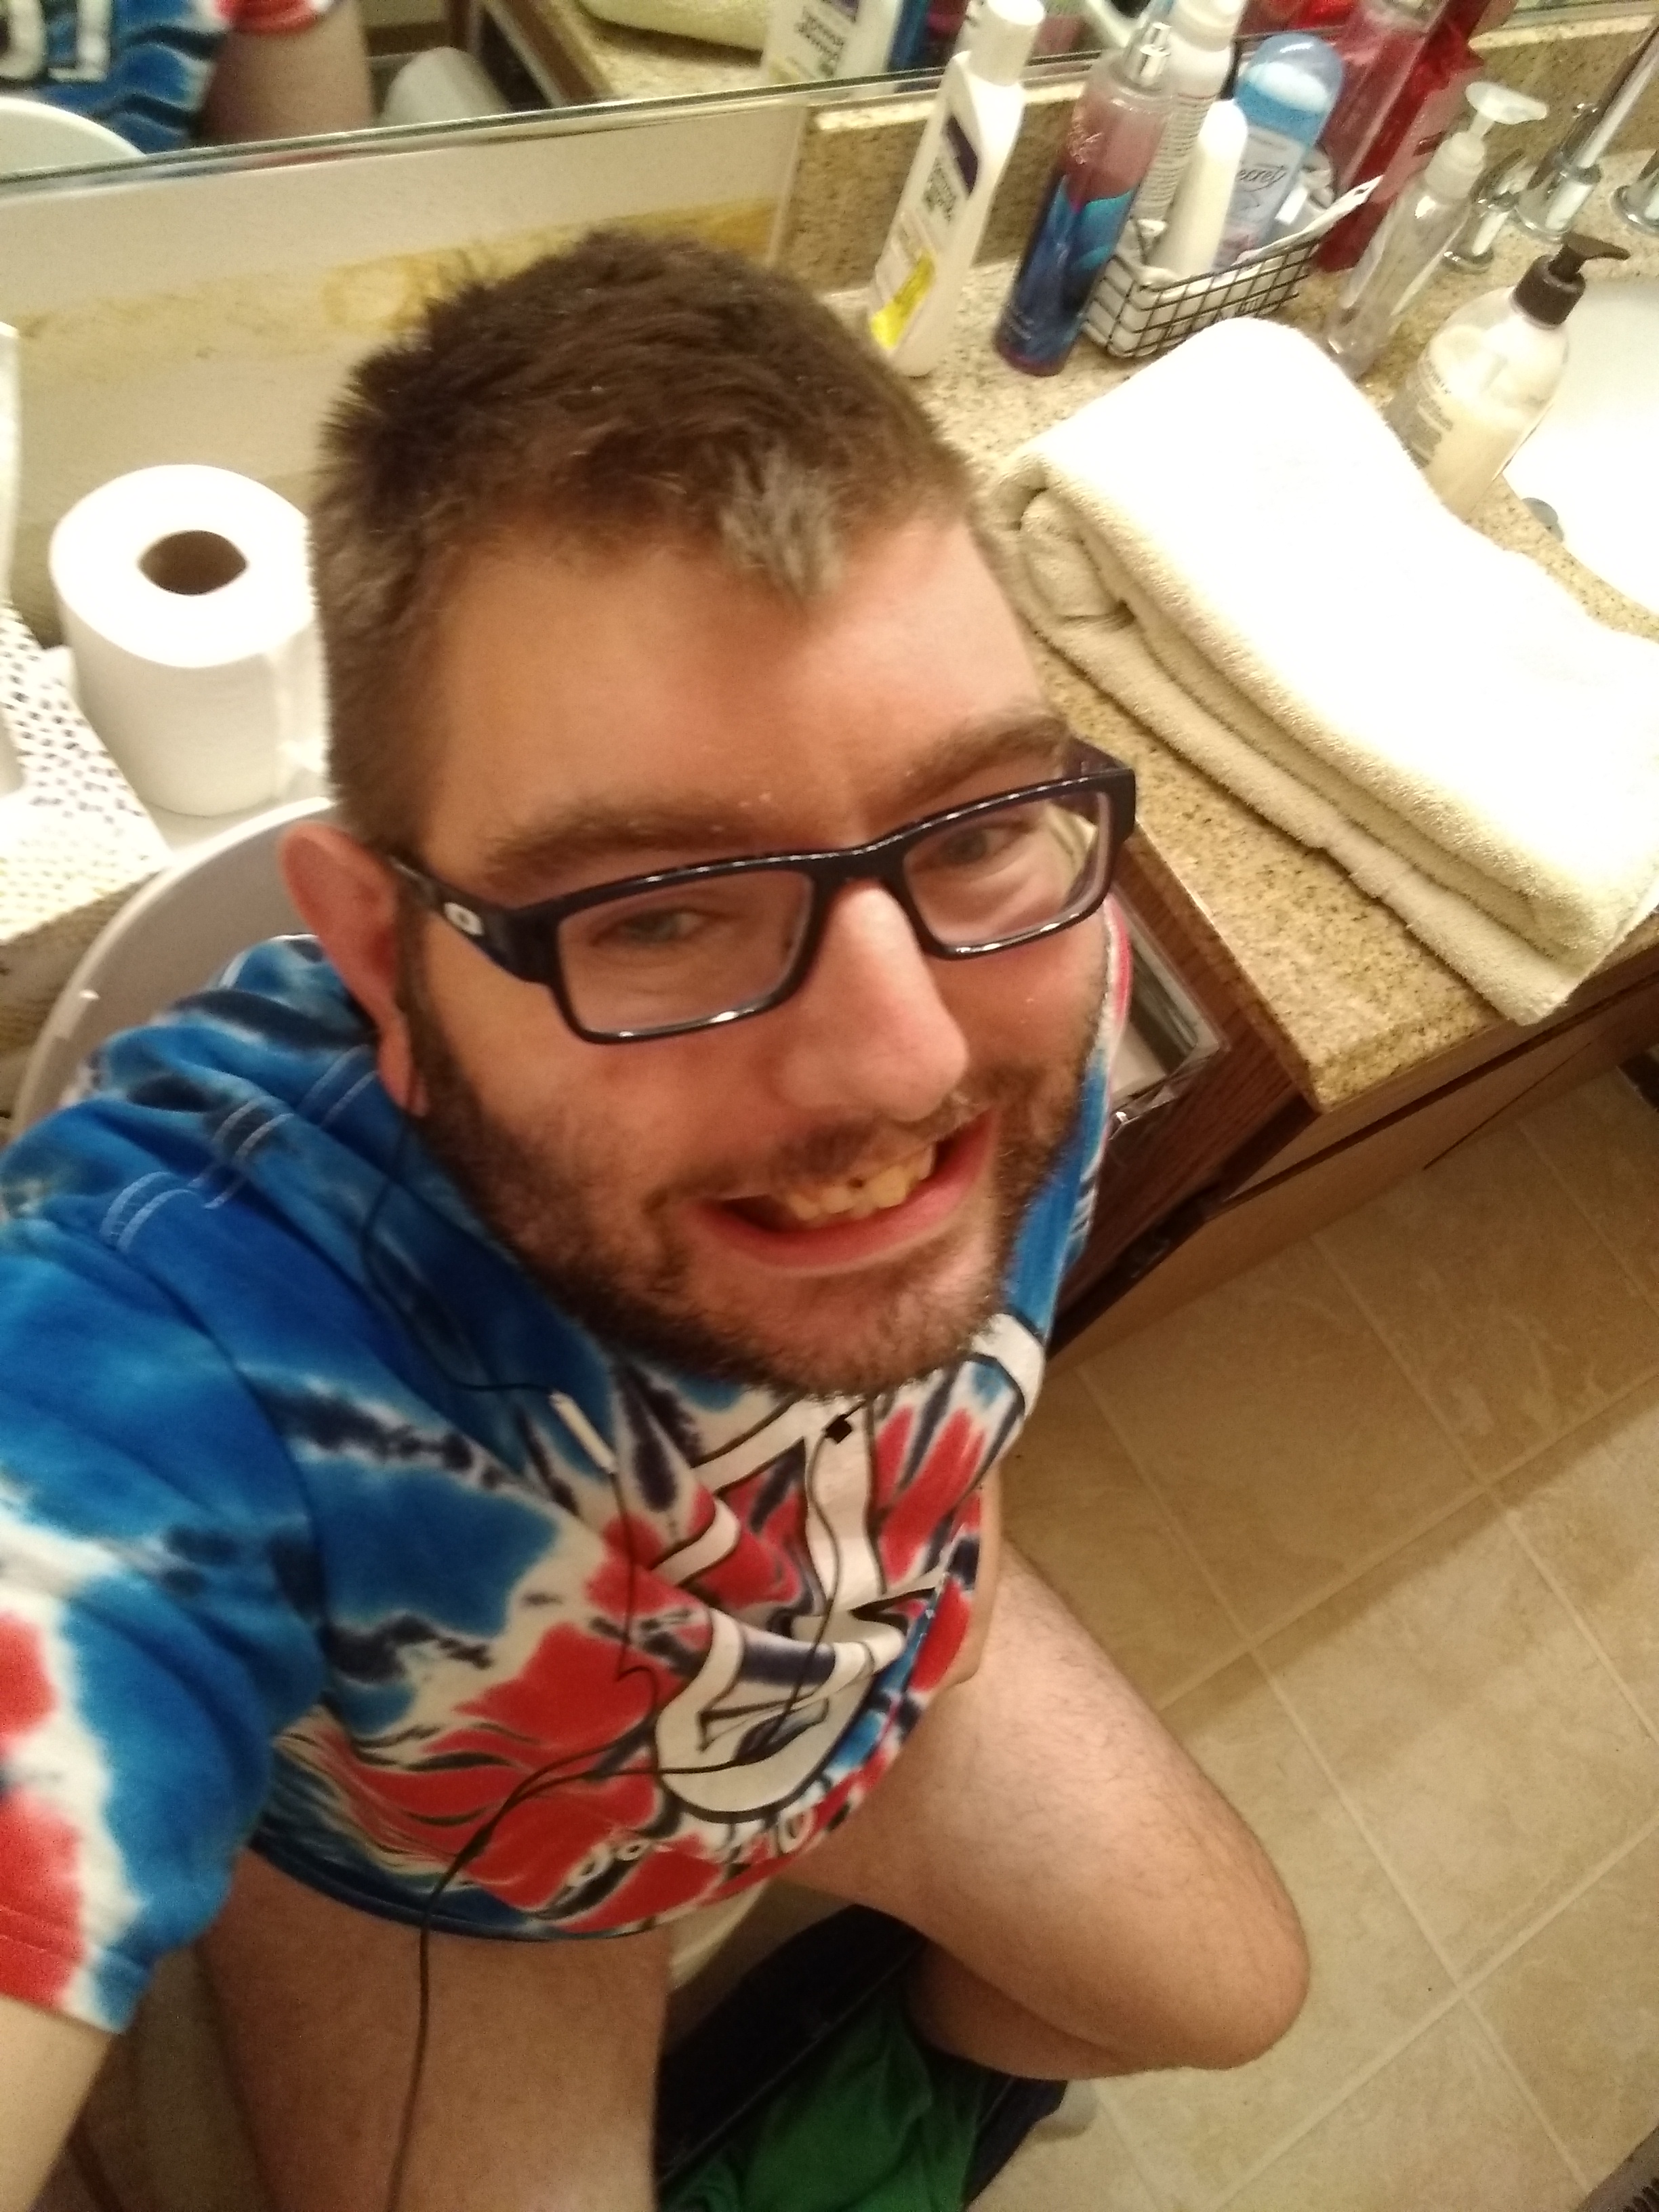 my toilet poop